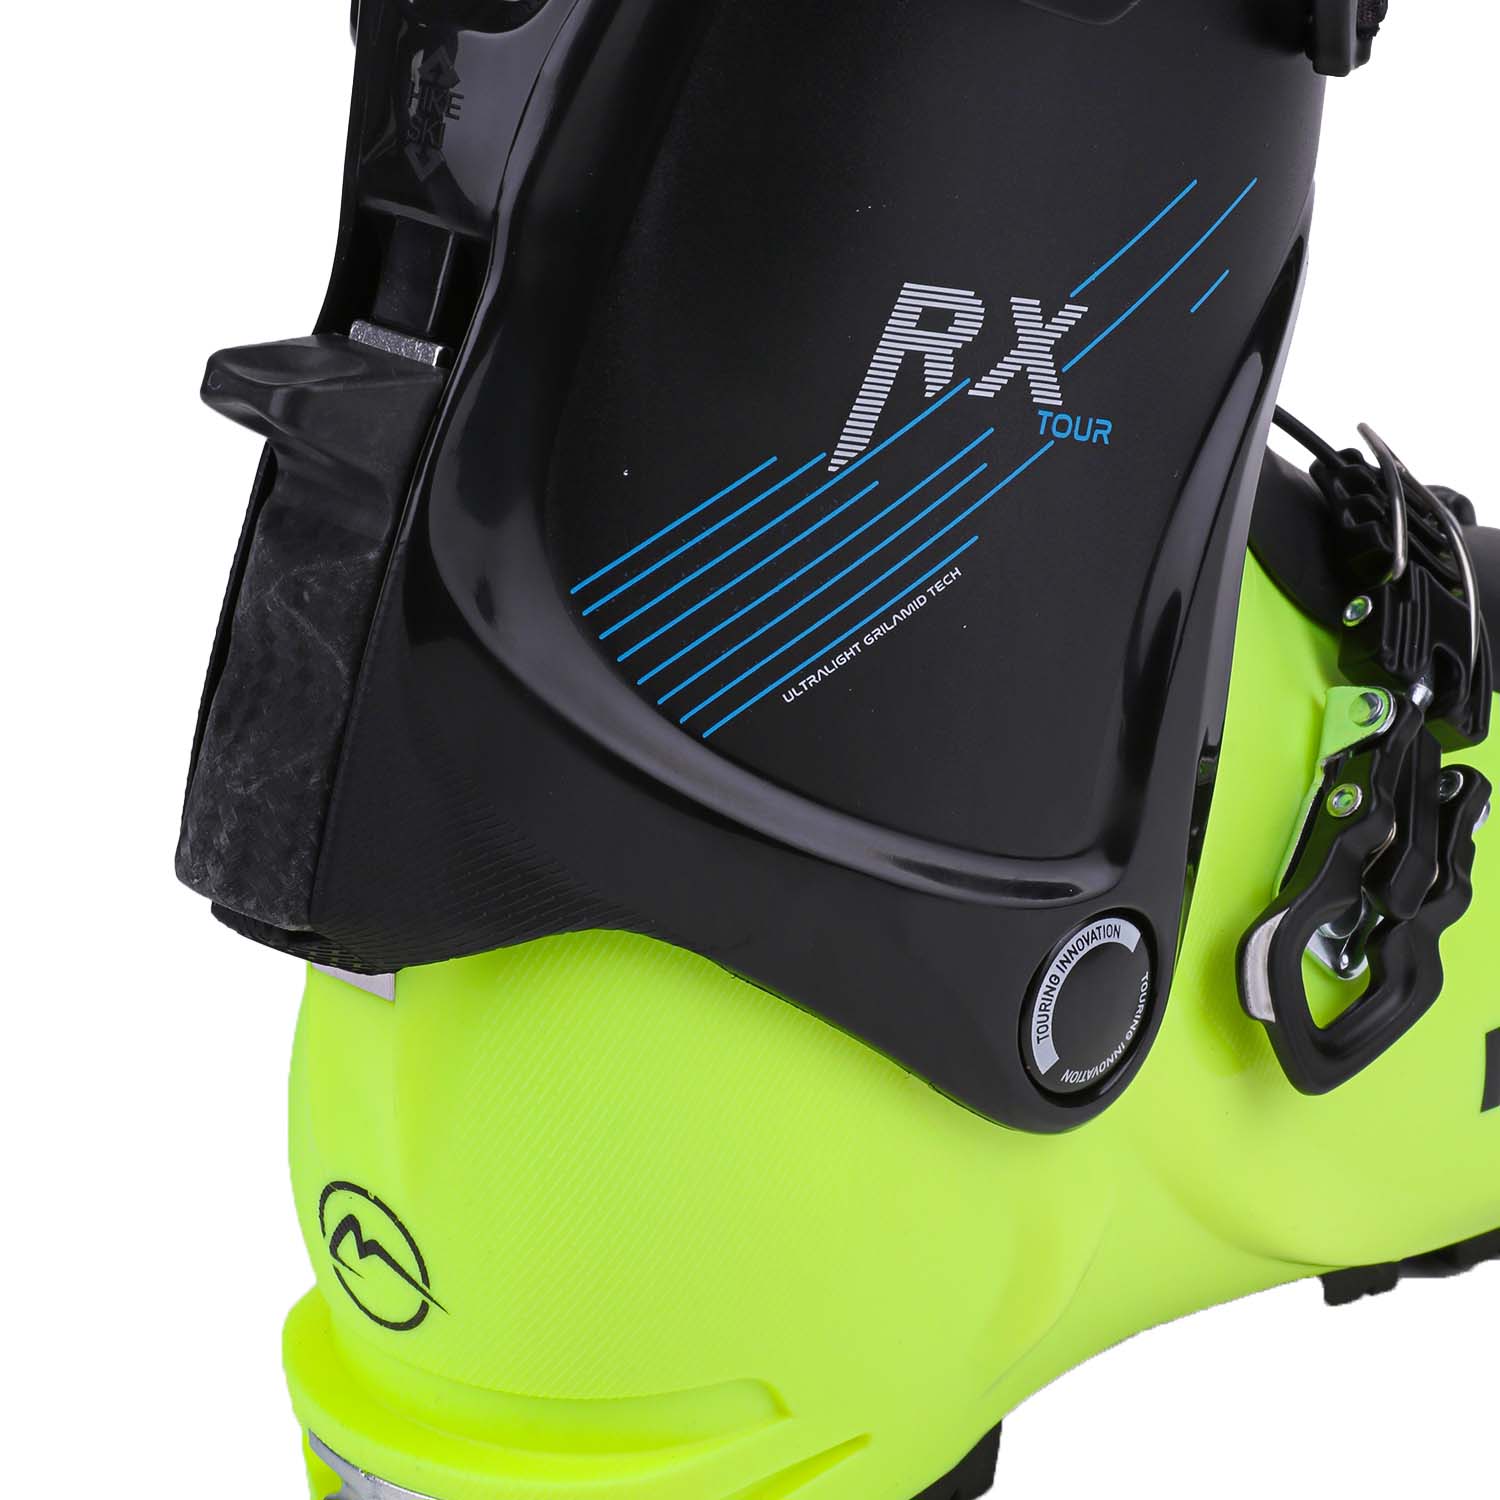 Roxa RX Tour  Ski Boots